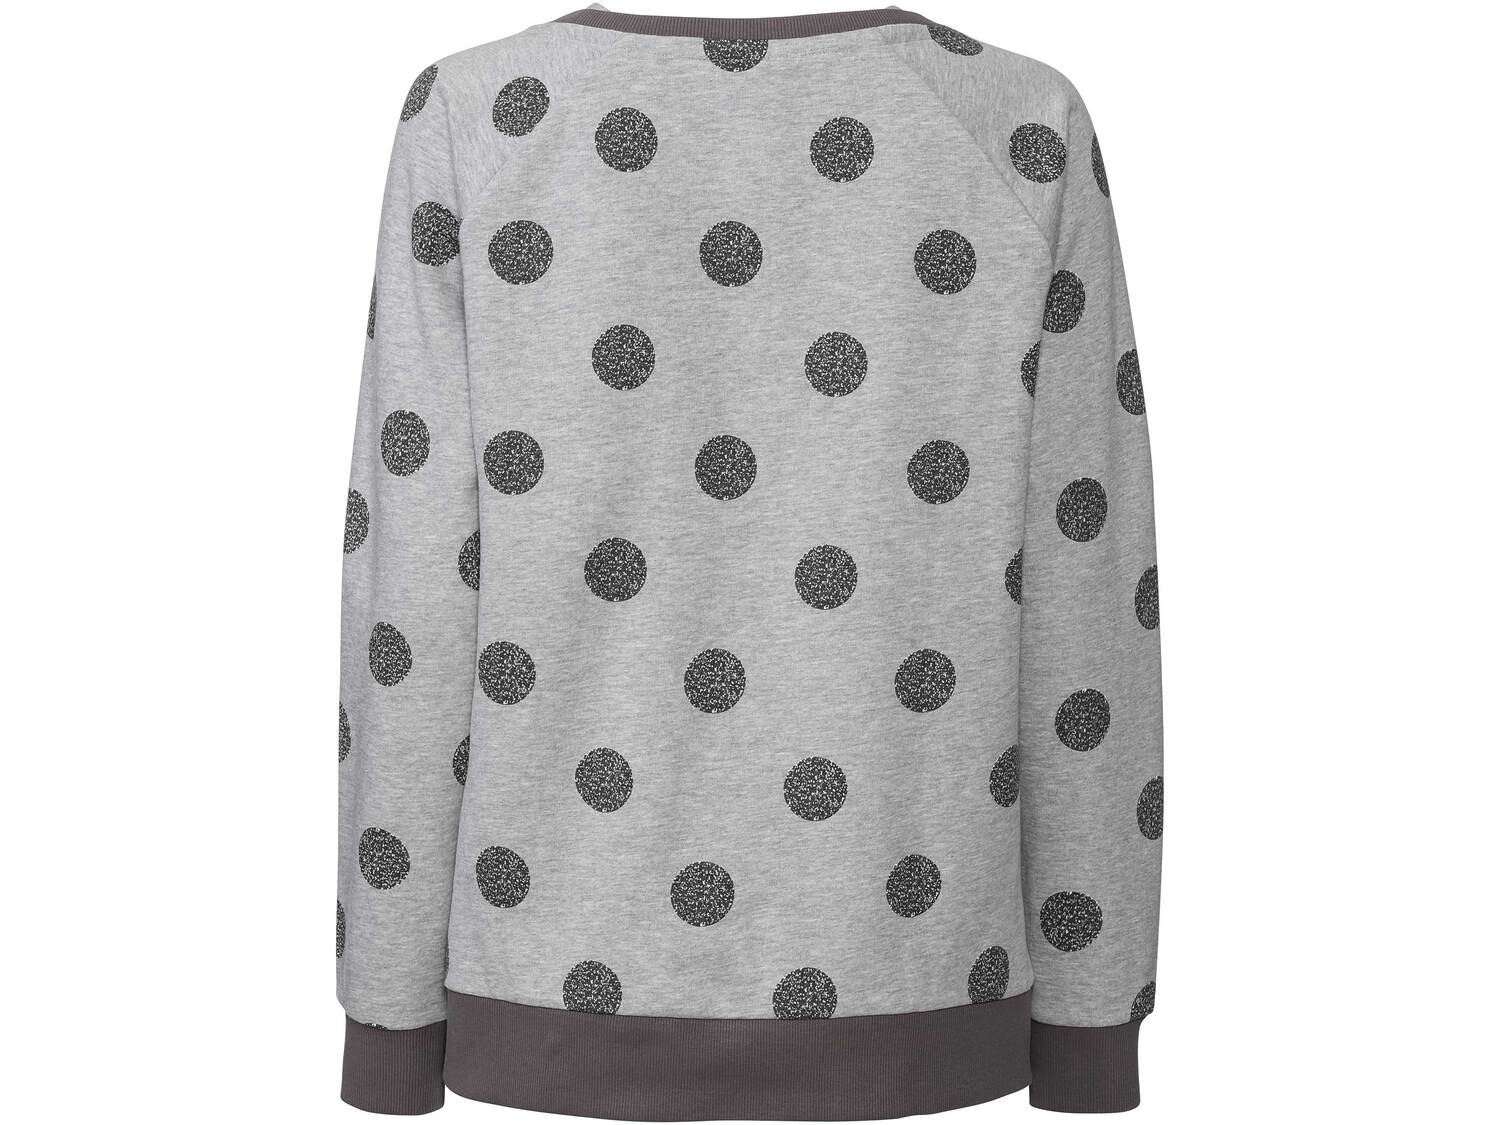 Bluza damska Esmara, cena 34,99 PLN 
- rozmiary: S-L
- wysoka zawartość bawełny
- ...